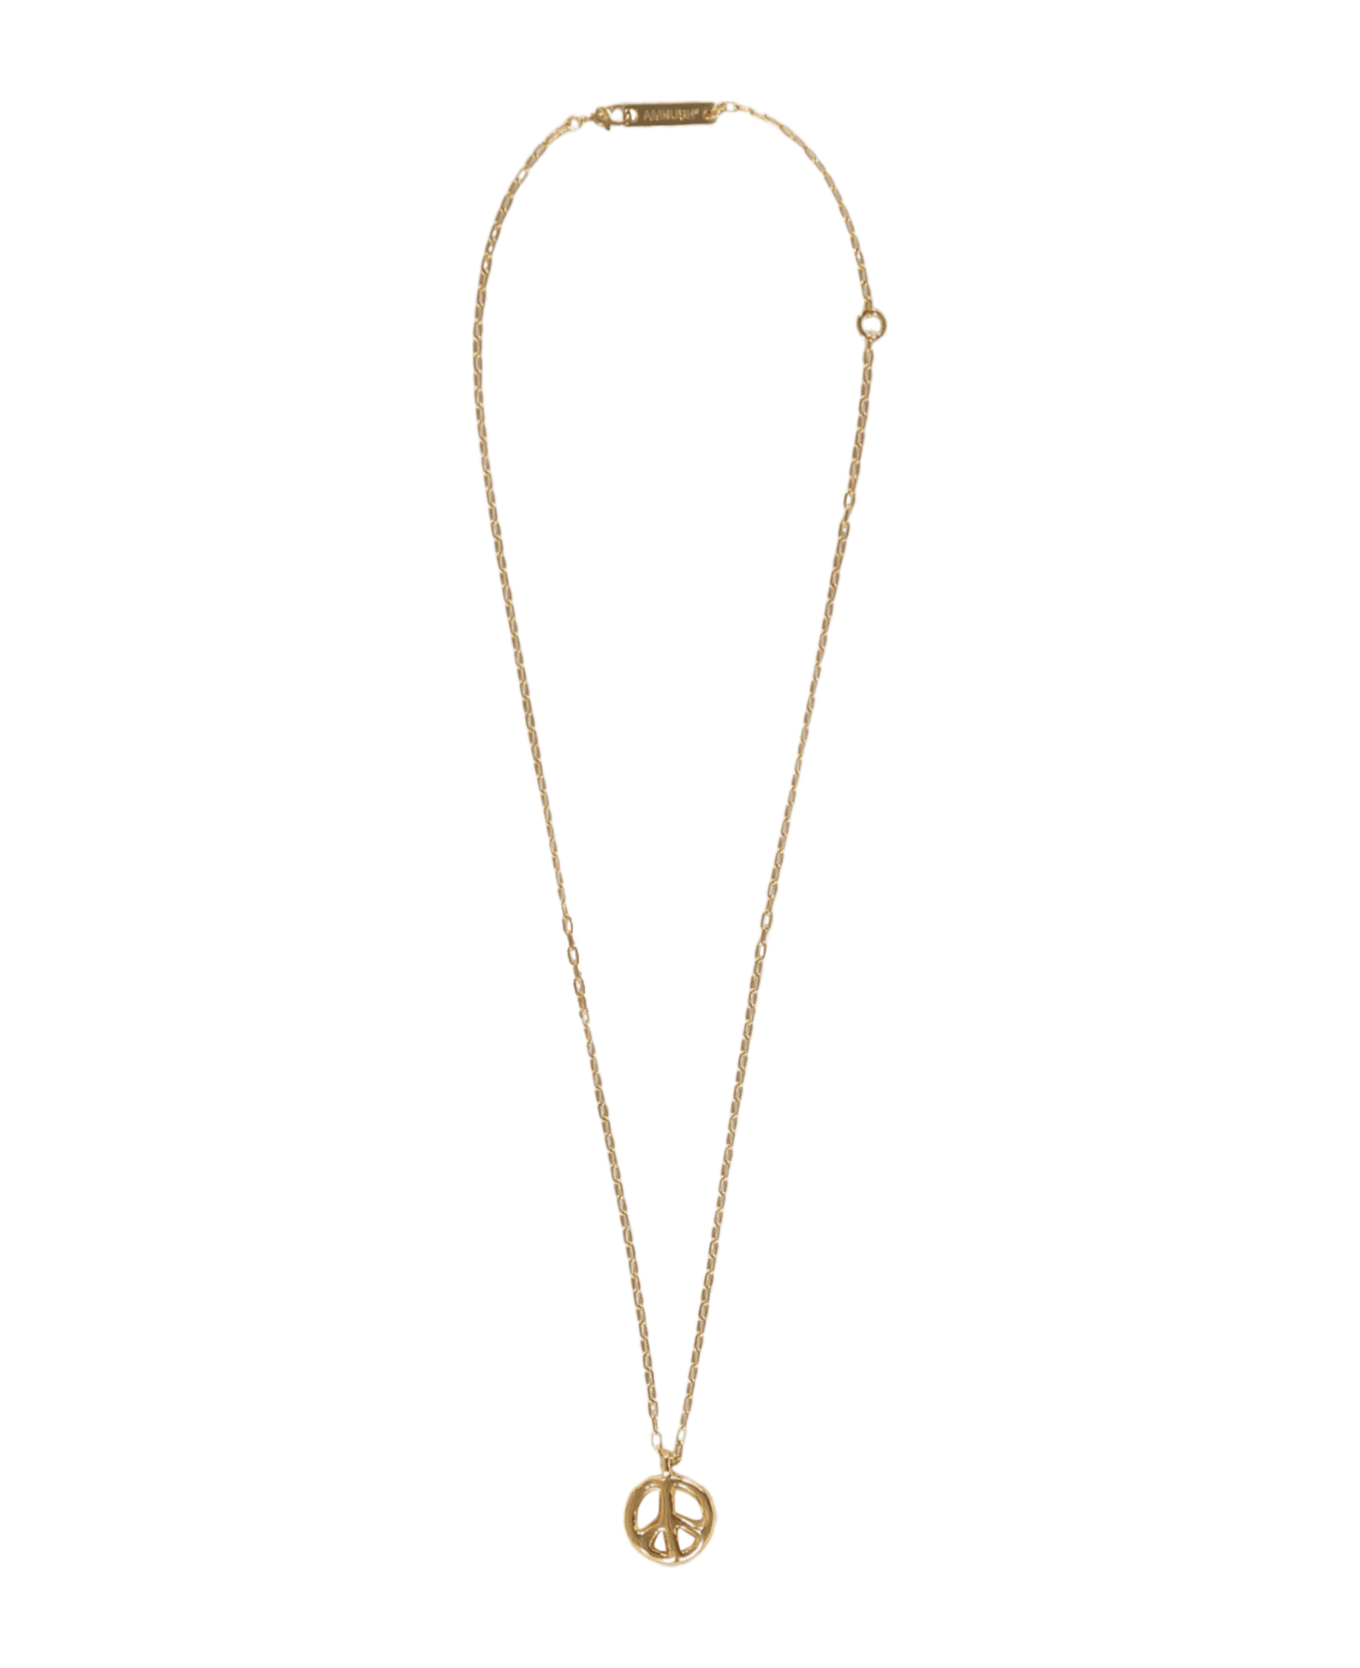 AMBUSH Chain Necklace With Decorative Pendant - Gold